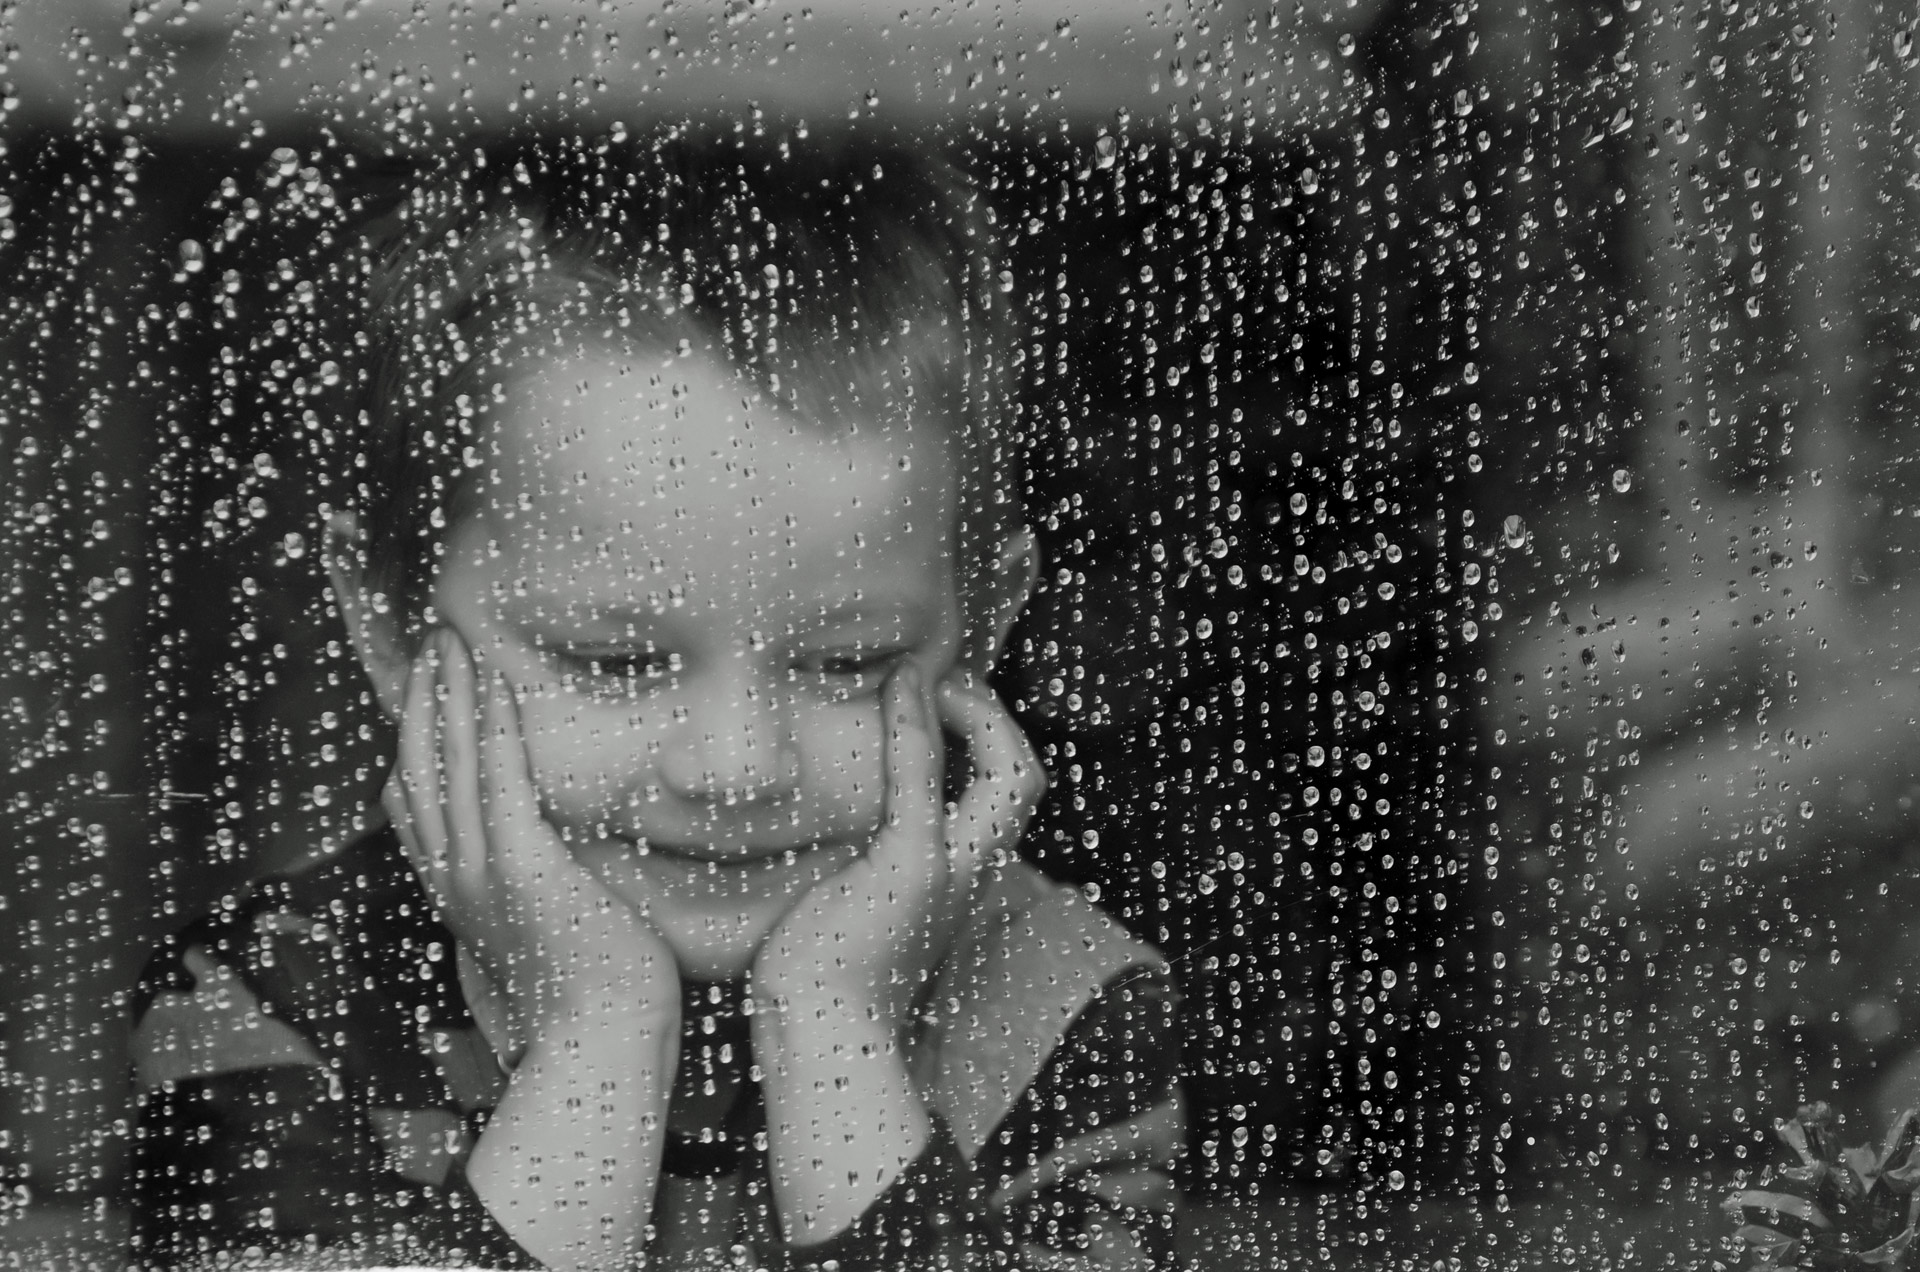 παιδί κοιτάζει από το μπαλκόνι την βροχή και αντιμετωπίζει την απώλεια και το πένθος